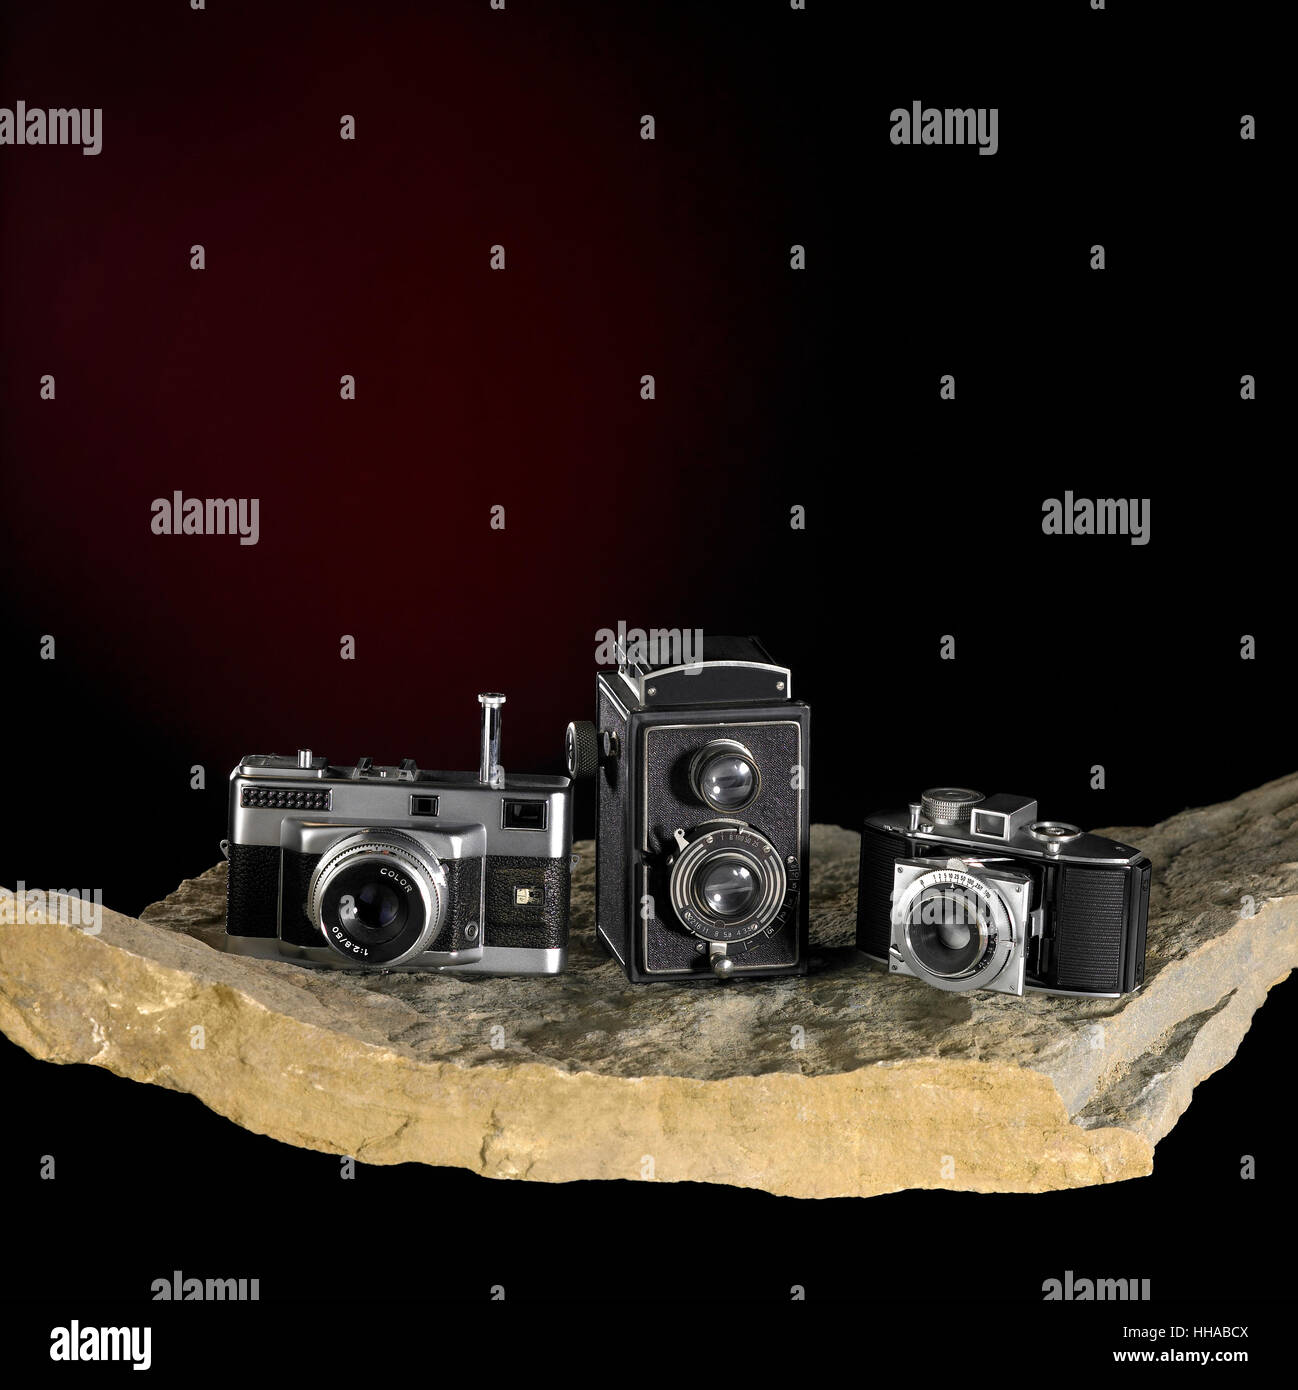 nostalgic cameras on stone surface Stock Photo